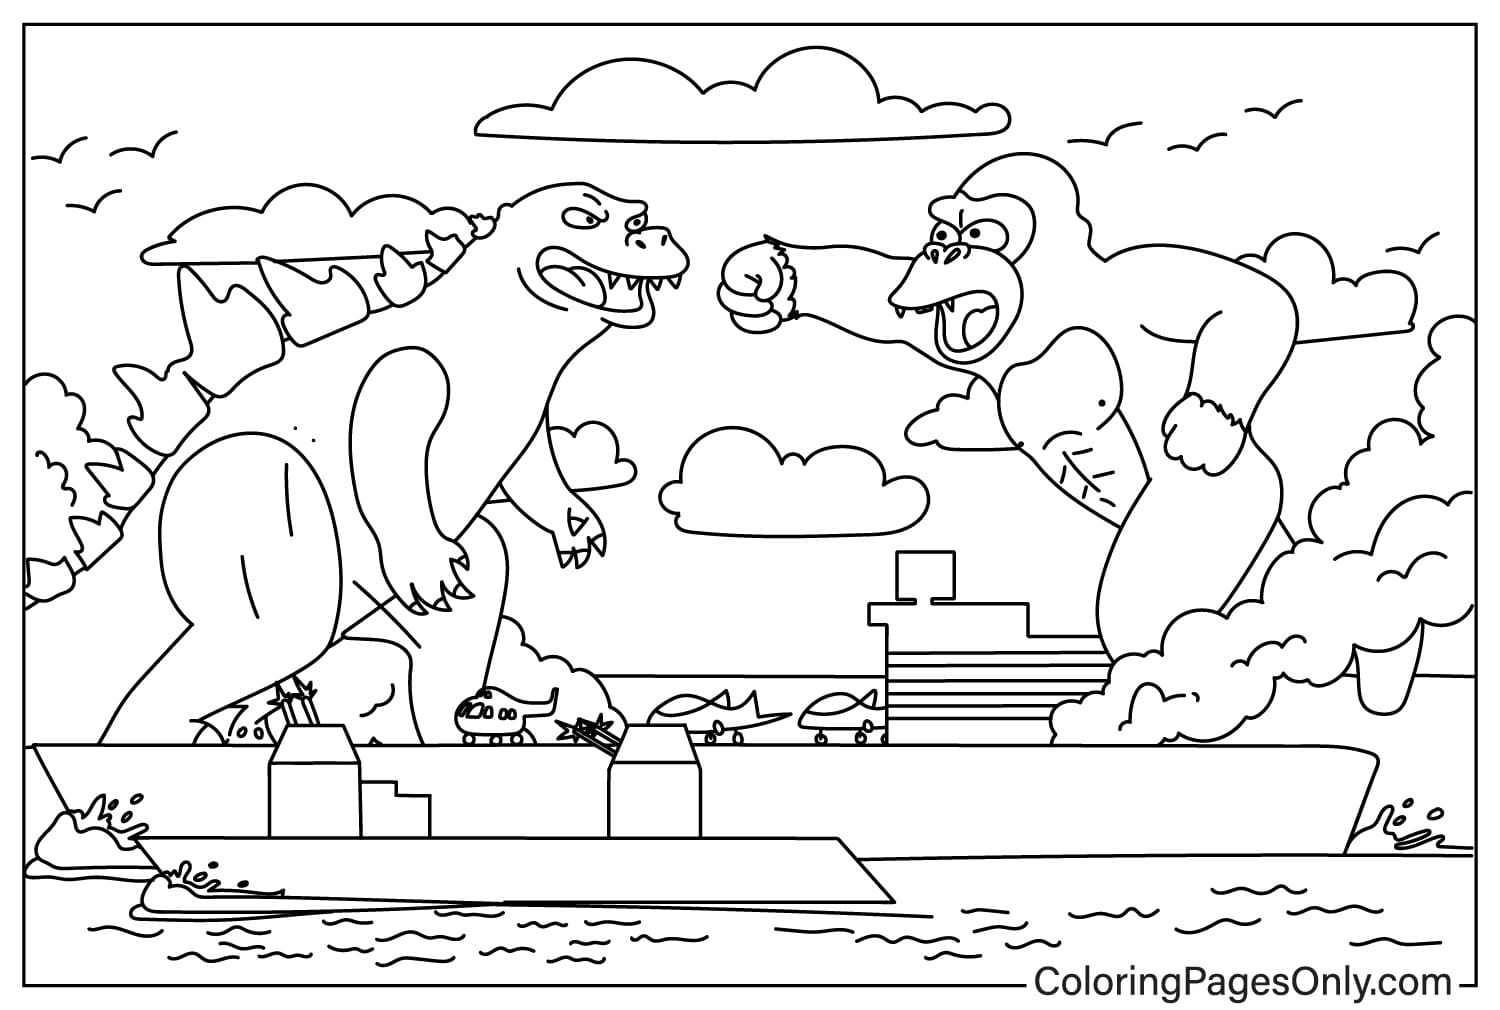 Godzilla x Kong Fight Coloring Page from Godzilla x Kong: The New Empire